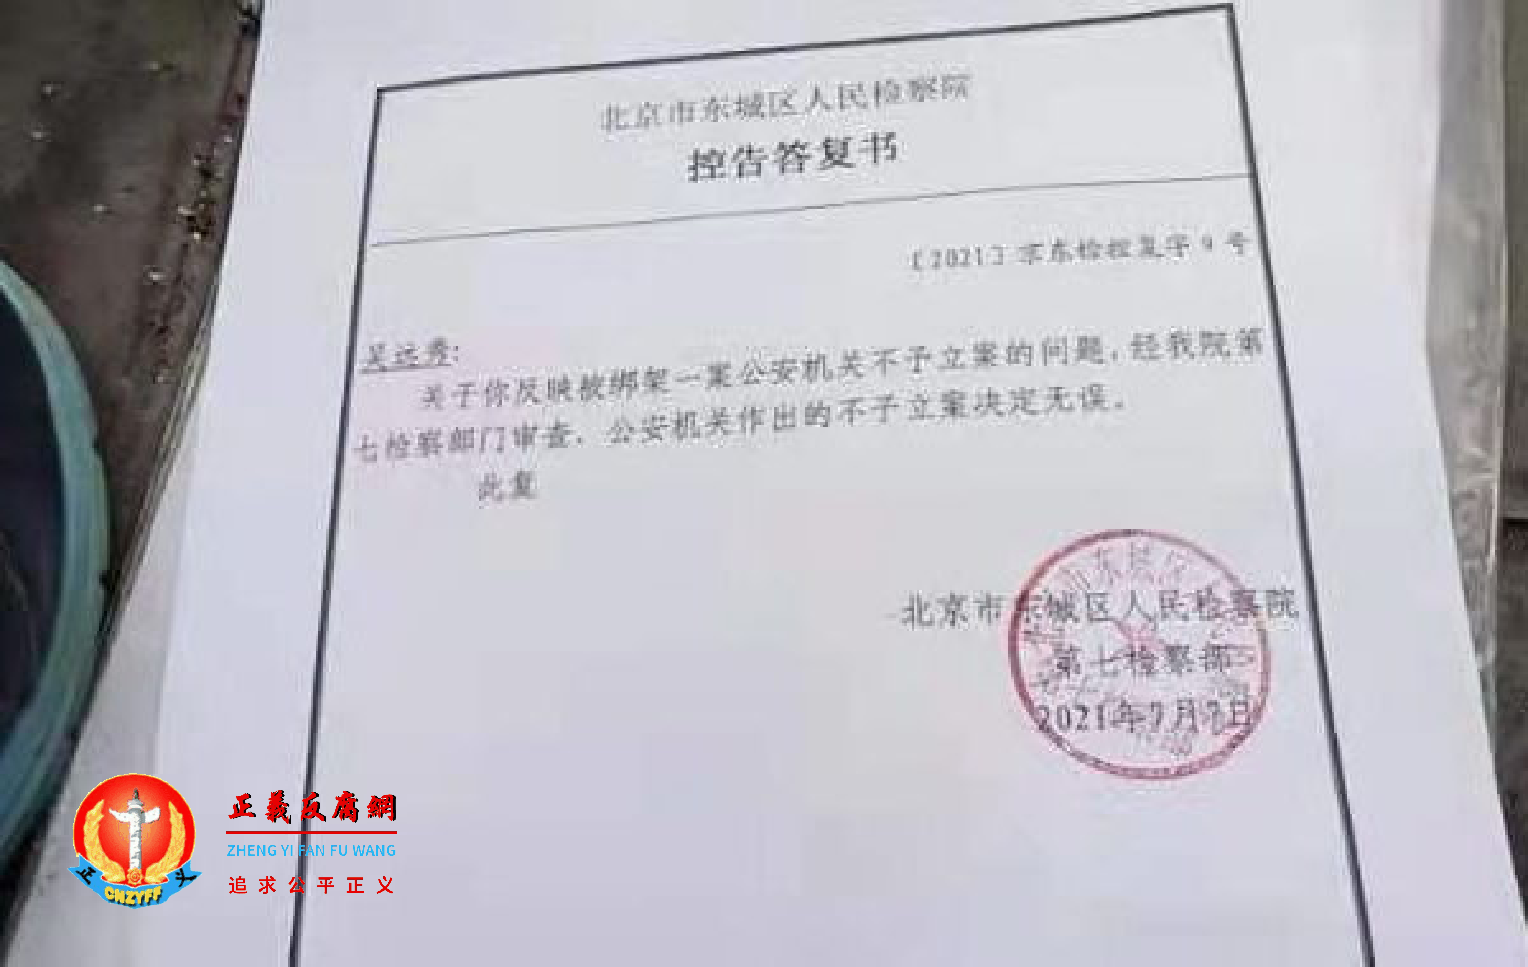 北京市东城区人民检察院给陕西访民吴远秀的“控告答复书”：公安机关作出的不予立案决定无误。让她决定提告。.png